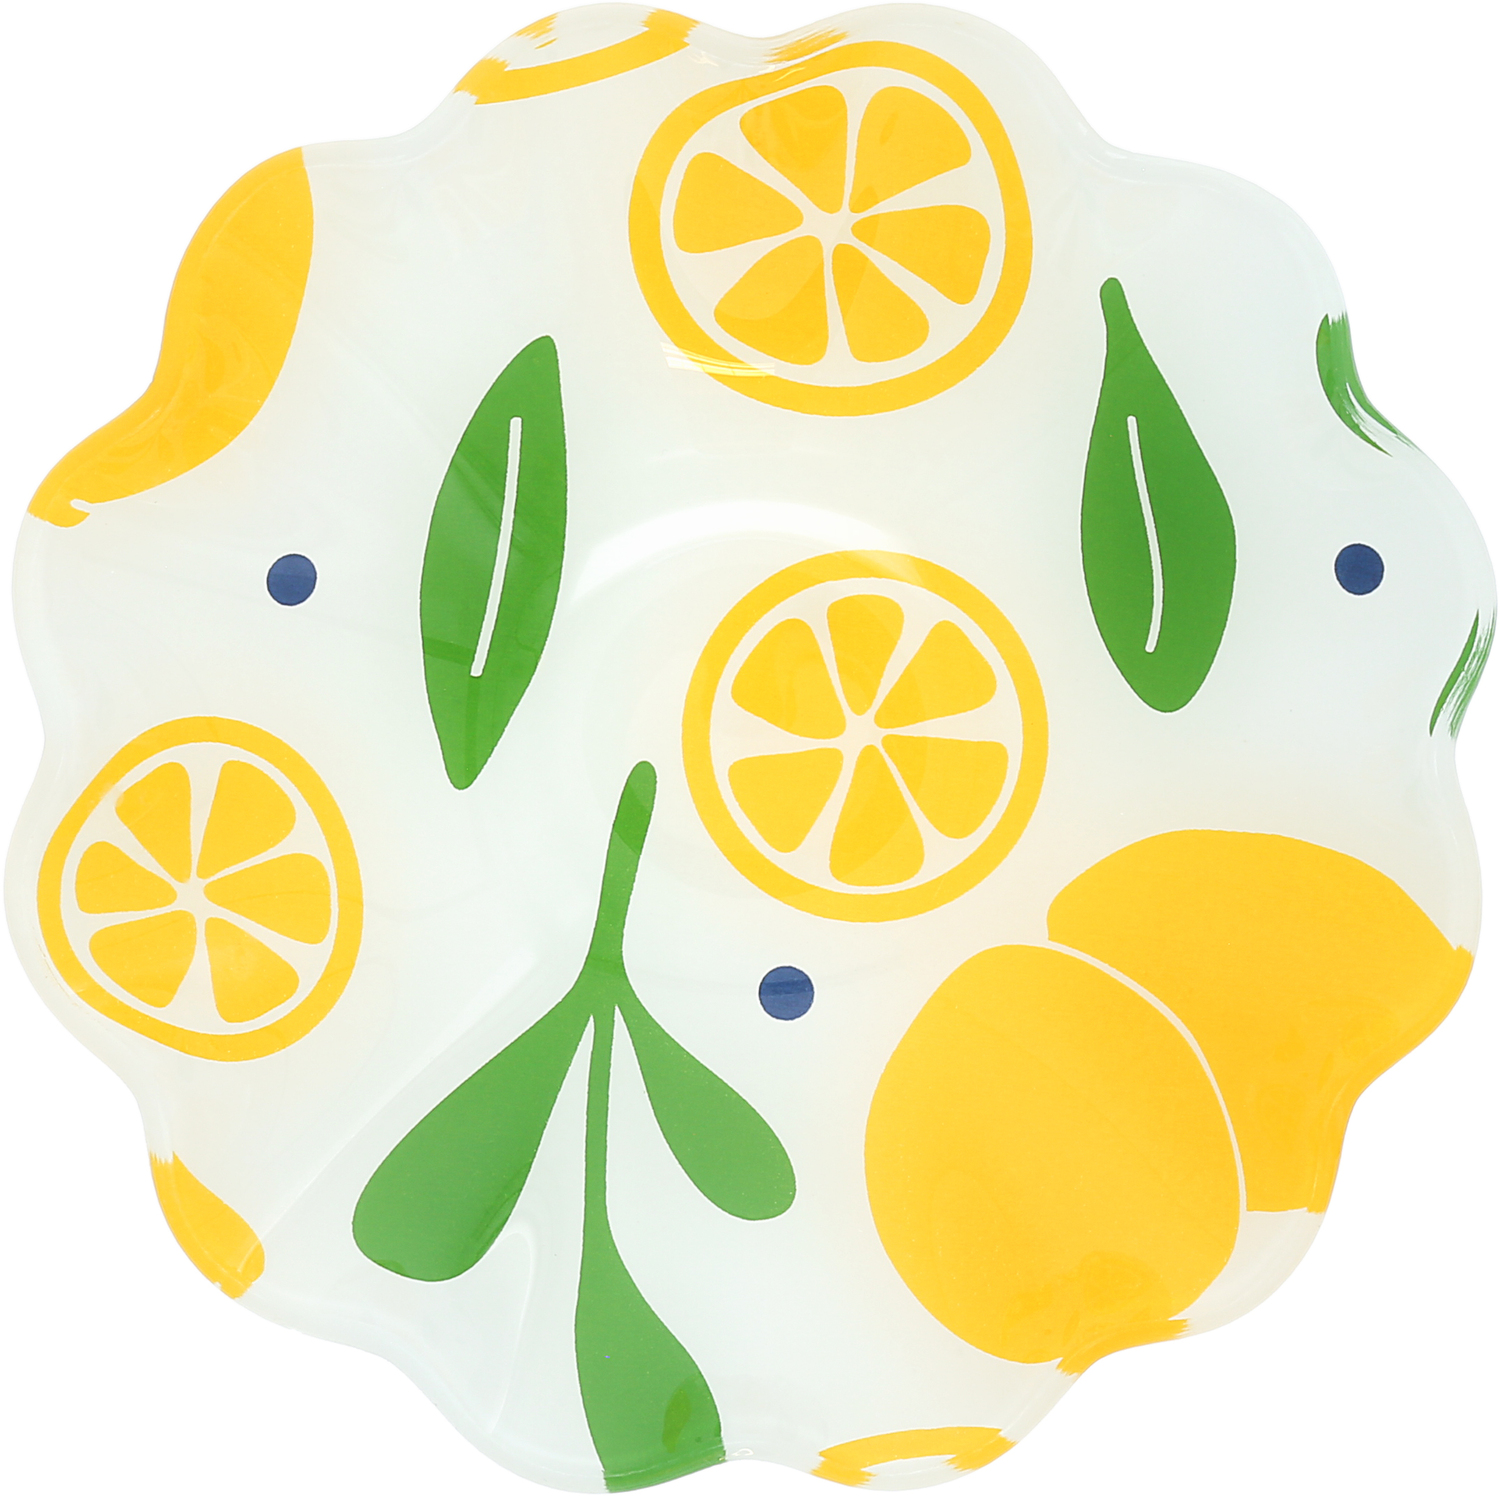 Lemons by Fruitful Livin' - Lemons - 6" Glass Bowl